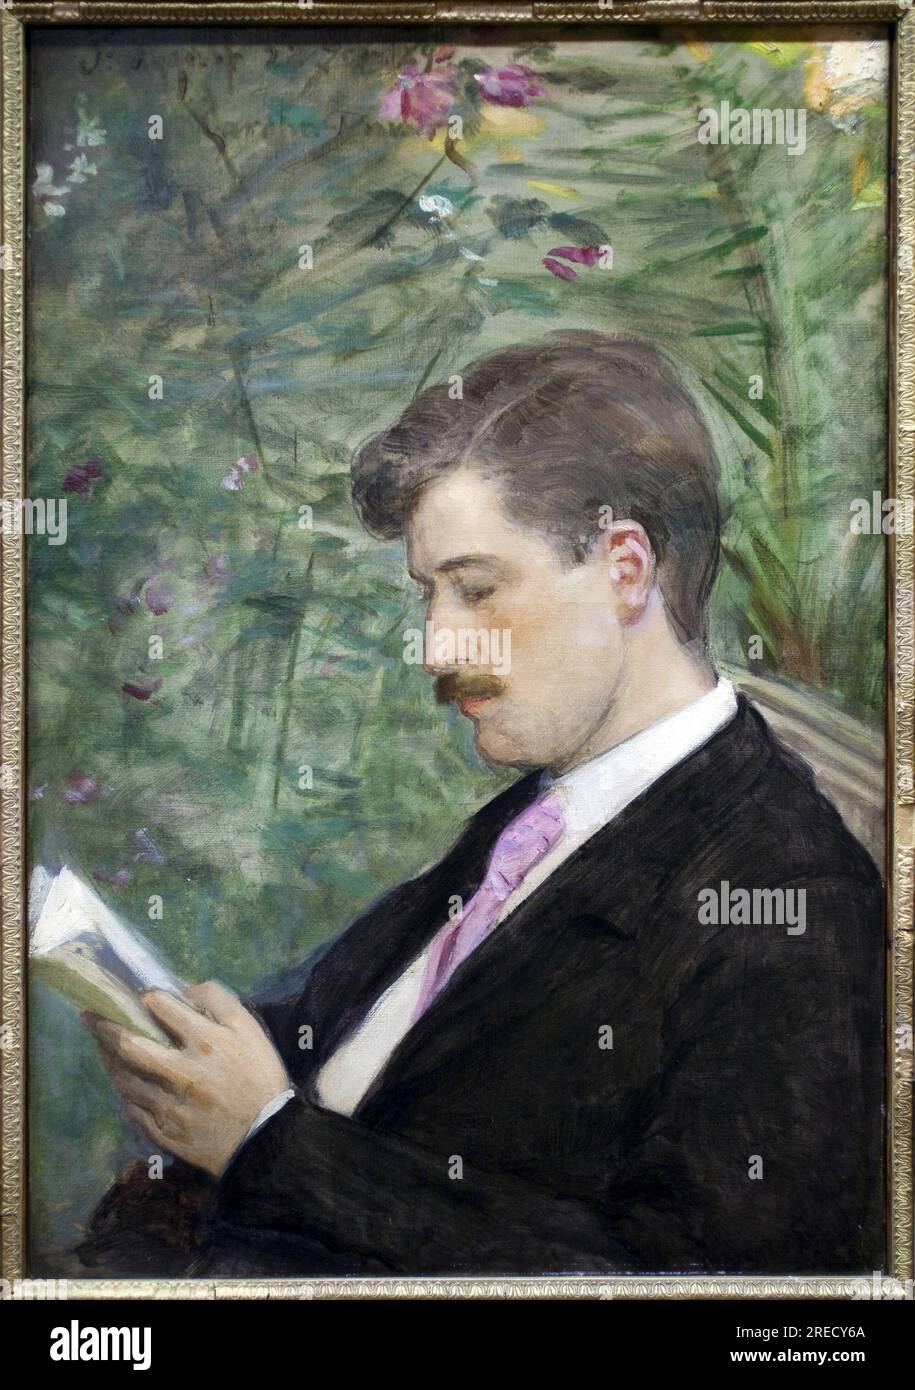 Georges Feydeau (1862-1921) lisant. Peinture de Carolus Duran (Charles Emile Auguste Durant, 1837-1917), huile sur toile, 1891. Musee des Beaux Arts de Lille. Stock Photo